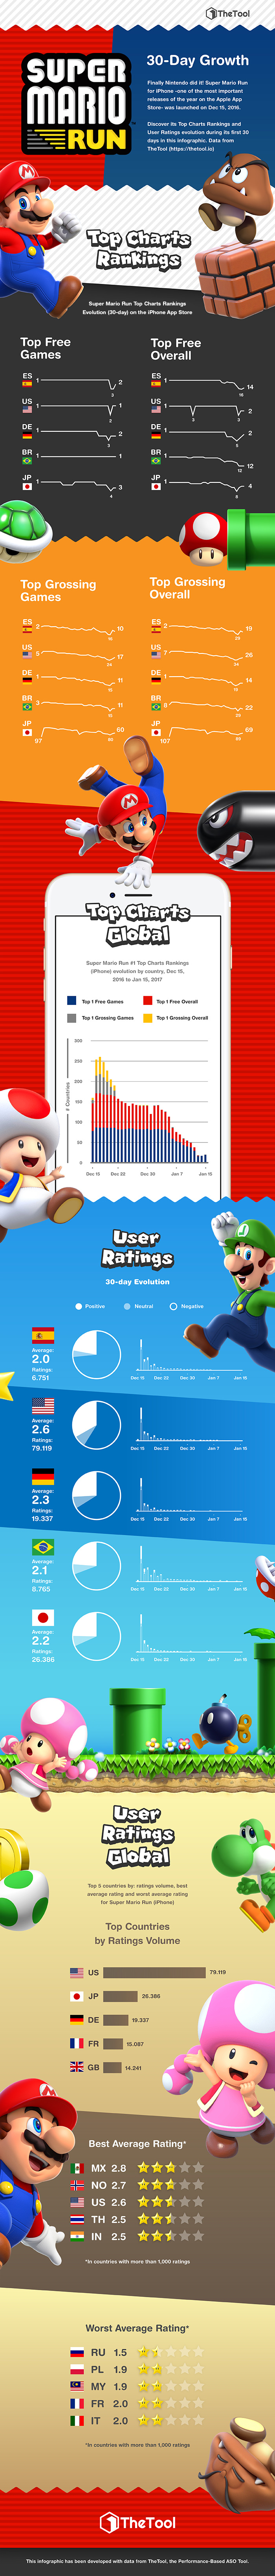 Super Mario Run : son succès résumé en une infographie